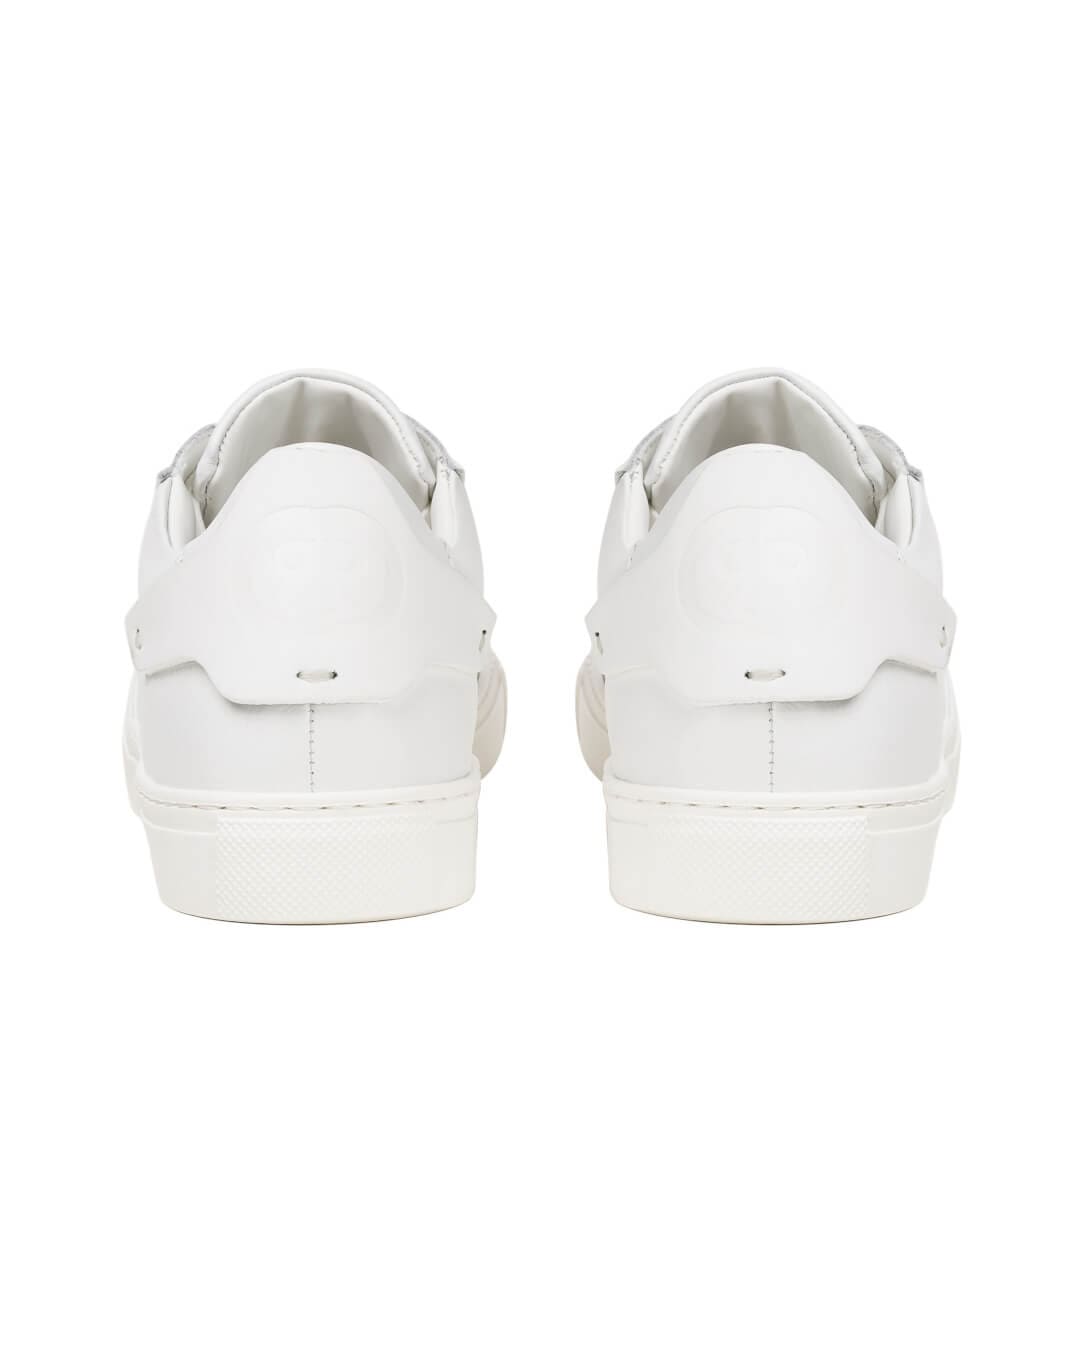 Cerruti Shoes Cerruti  I88I White Urban Sneakers